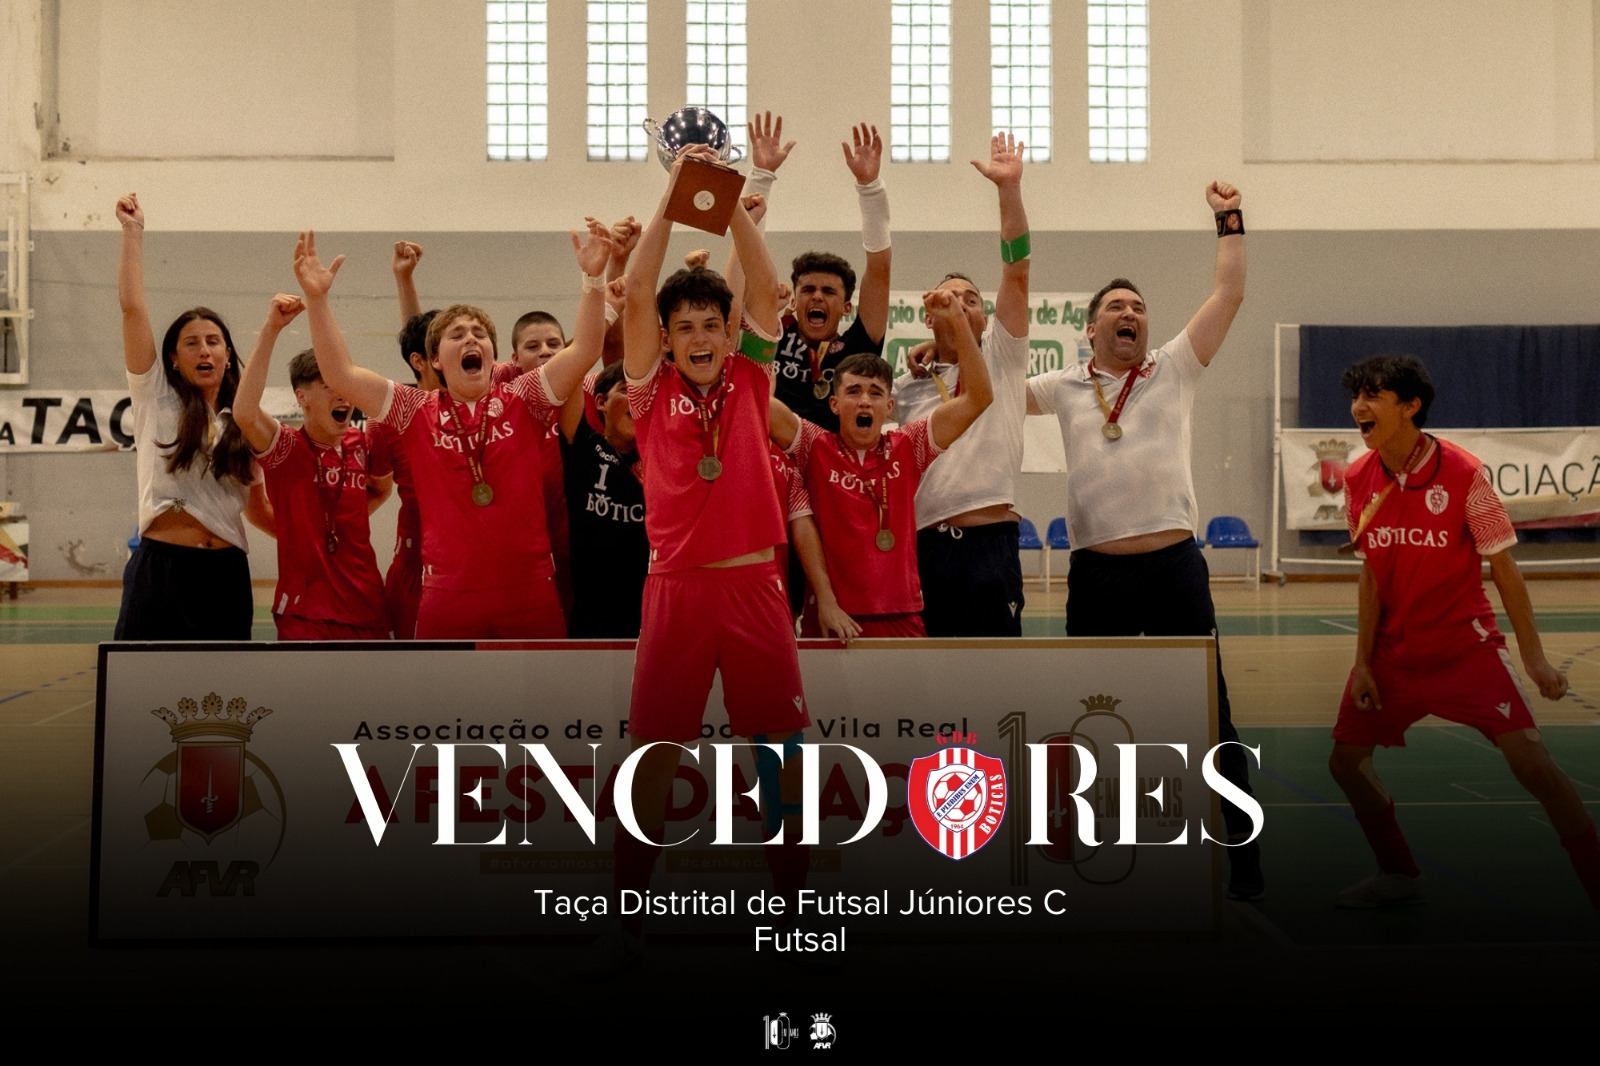 GD Boticas Vencedor da Final Four da Taça Distrital de Futsal Juniores C 